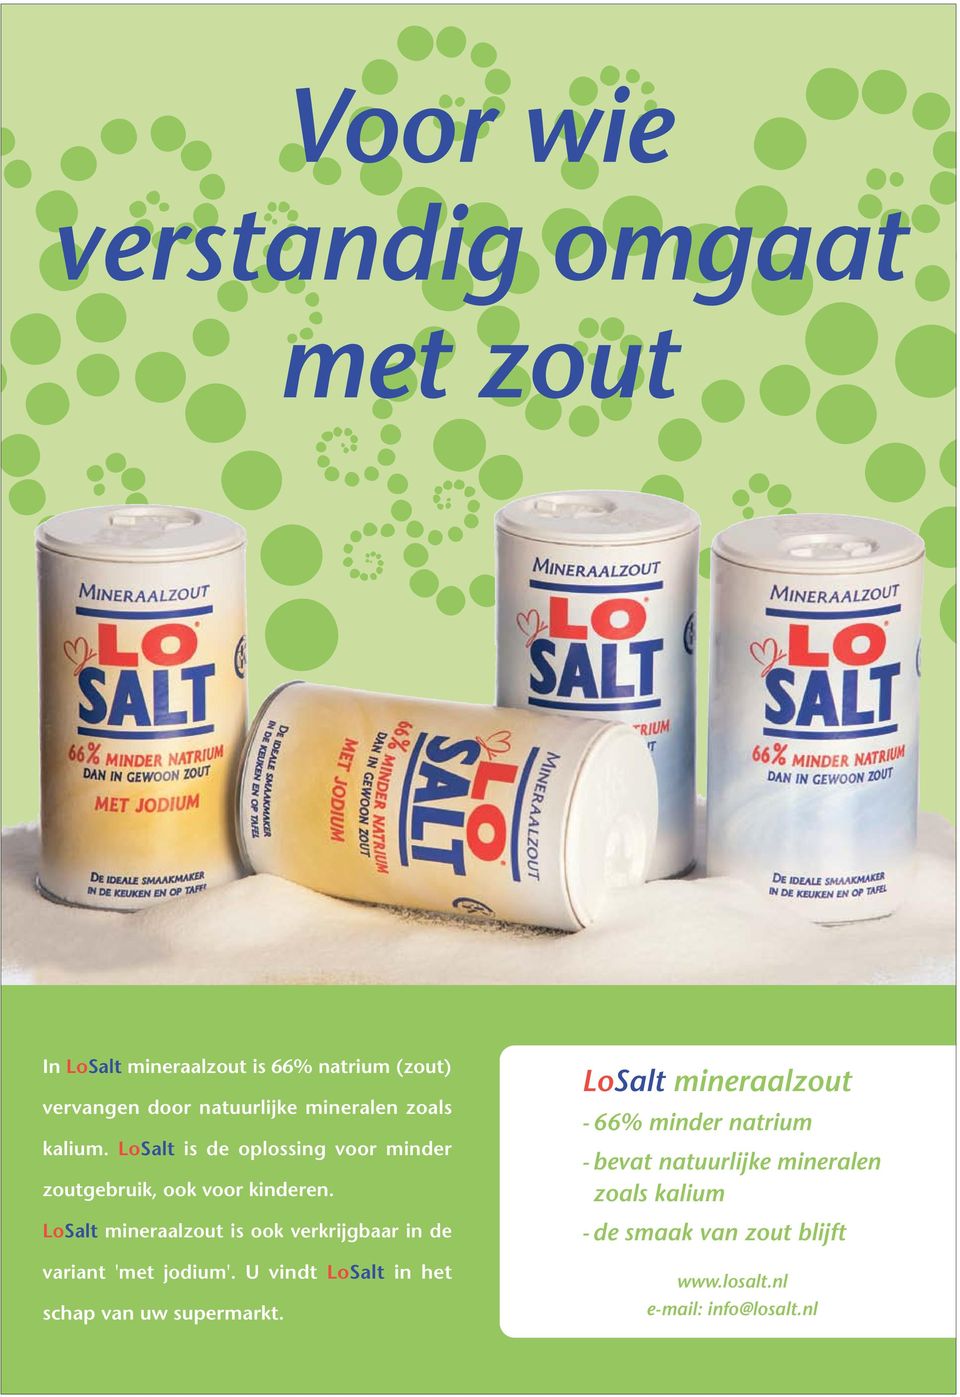 LoSalt mineraalzout is ook verkrijgbaar in de variant 'met jodium'. U vindt LoSalt in het schap van uw supermarkt.